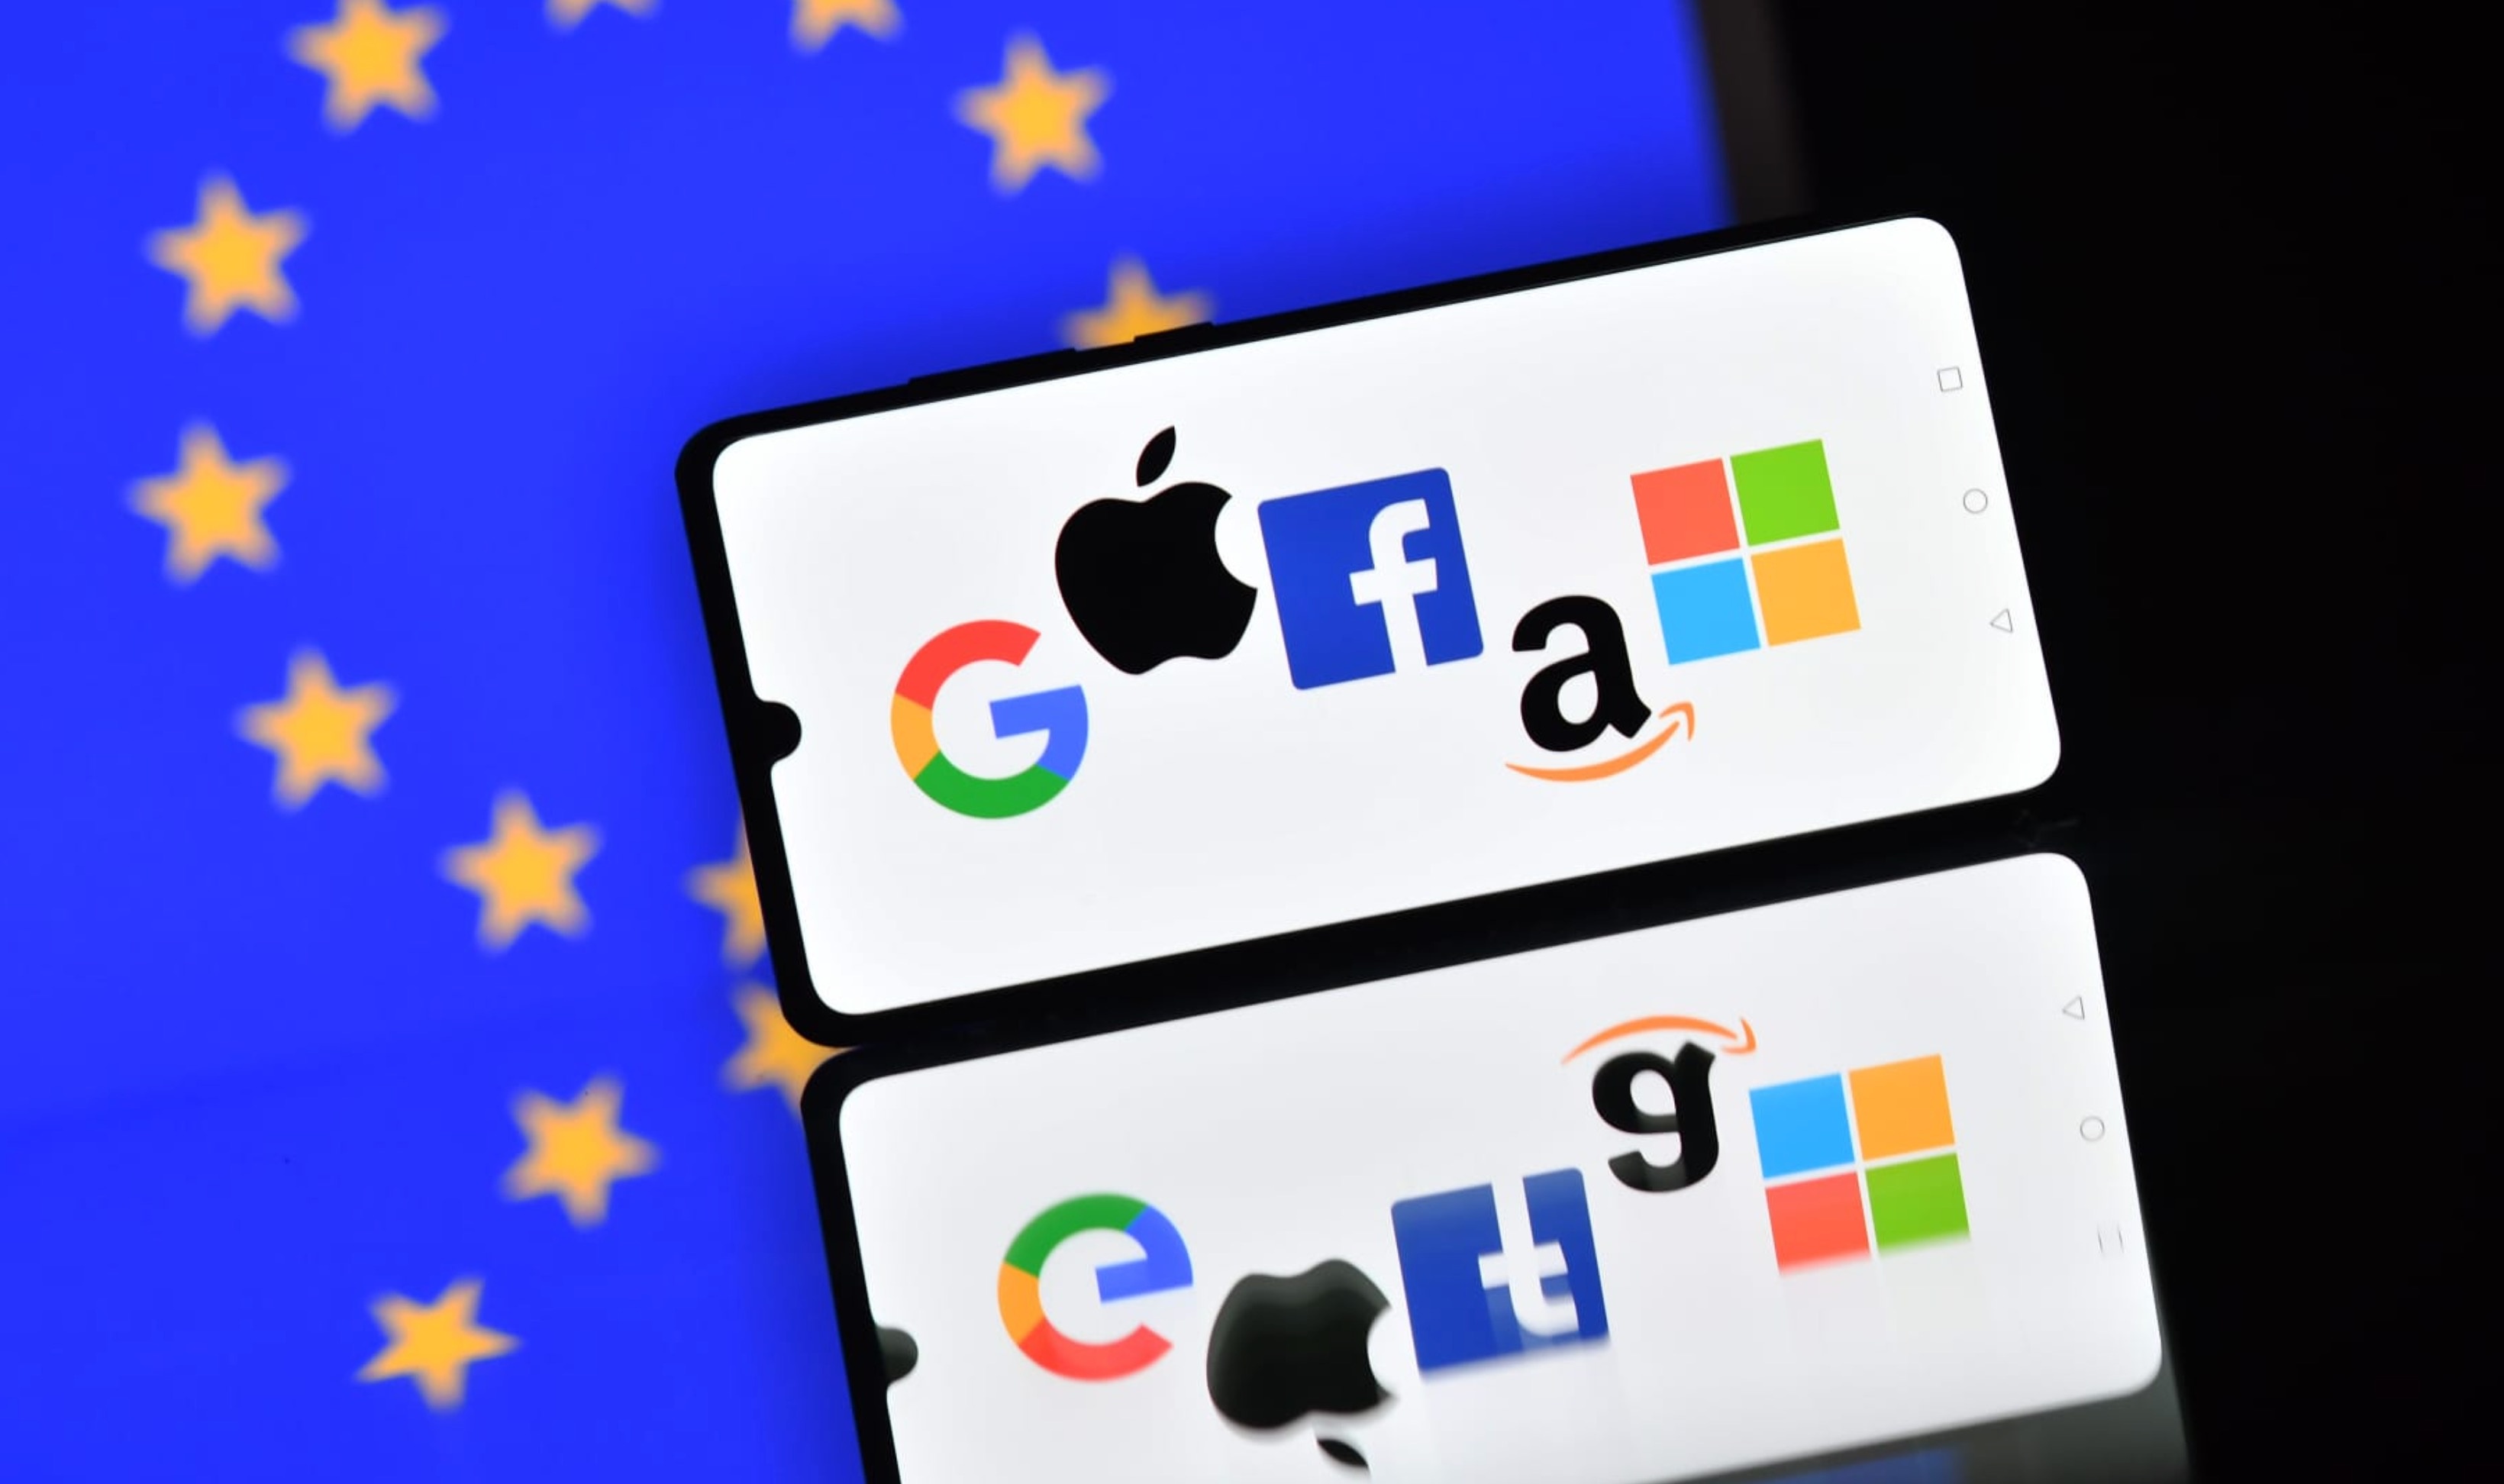 Châu Âu sắp tước đi miếng mồi của Facebook, Google - ảnh 1